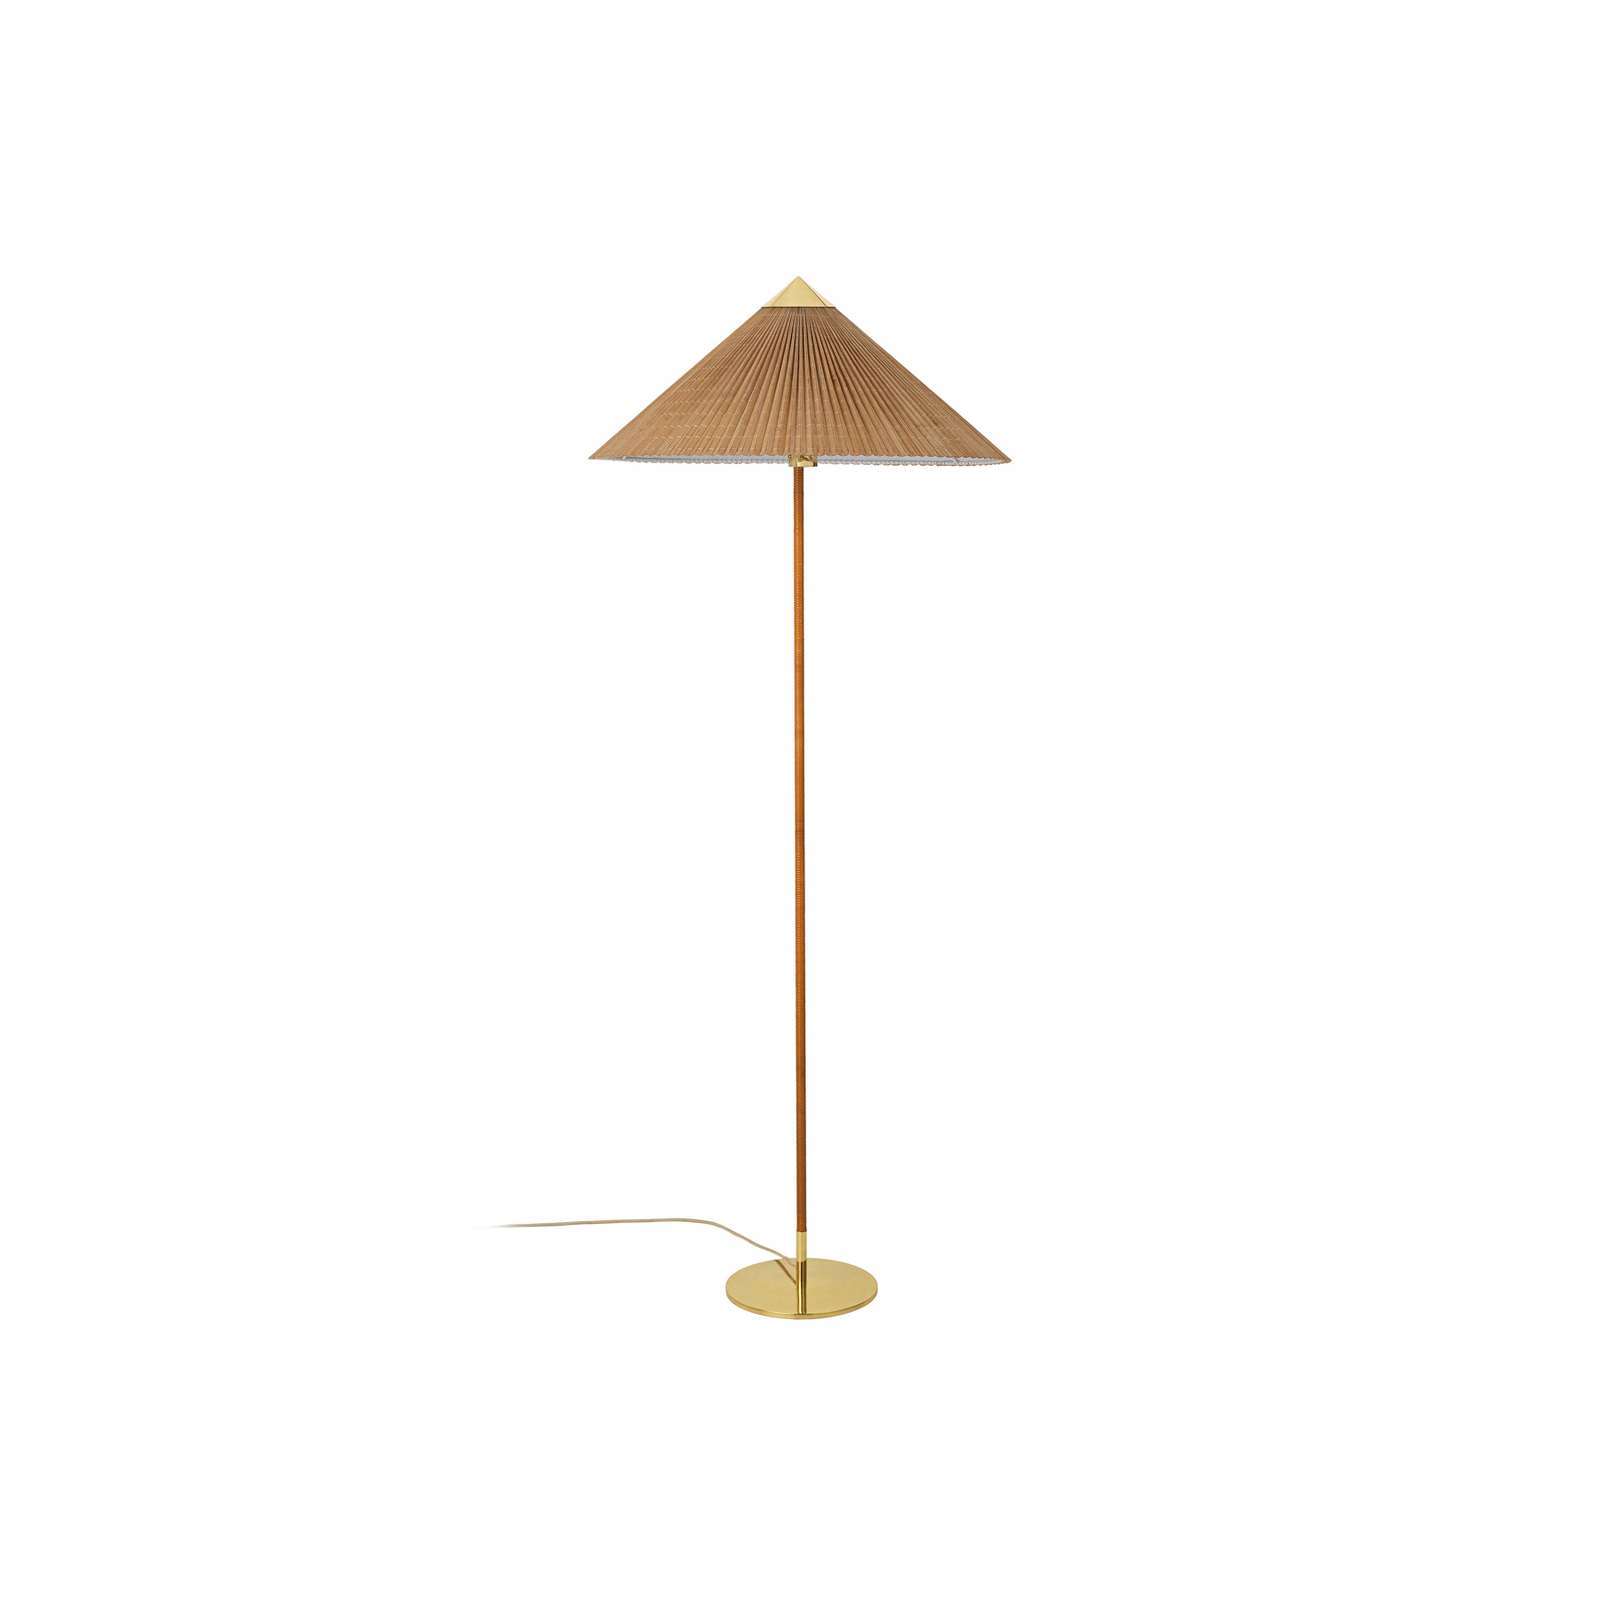 GUBI lampe sur pied 9602, laiton/rotin, abat-jour en bambou